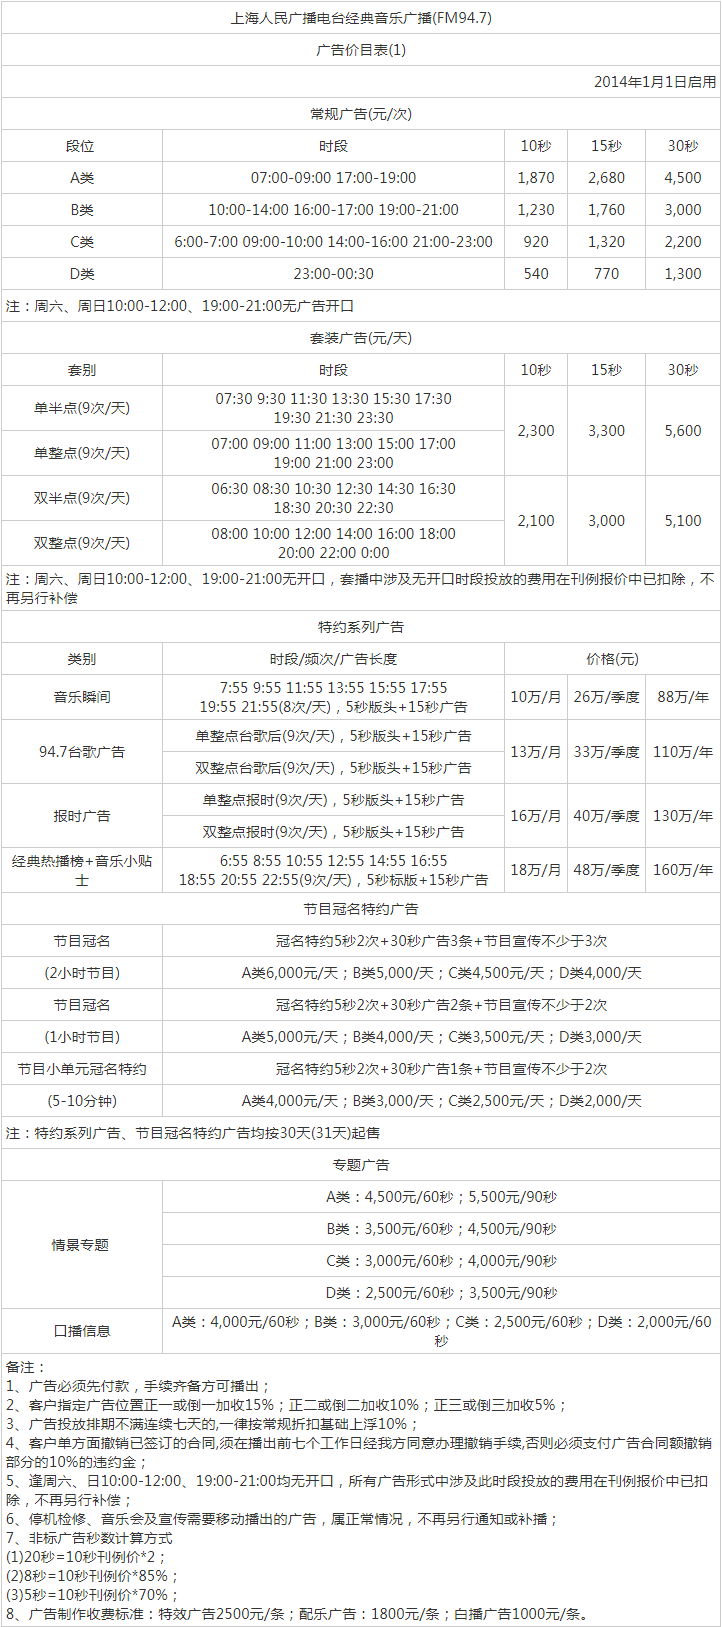 2014上海东方广播电台东广经典音乐94.7广告报价表.png